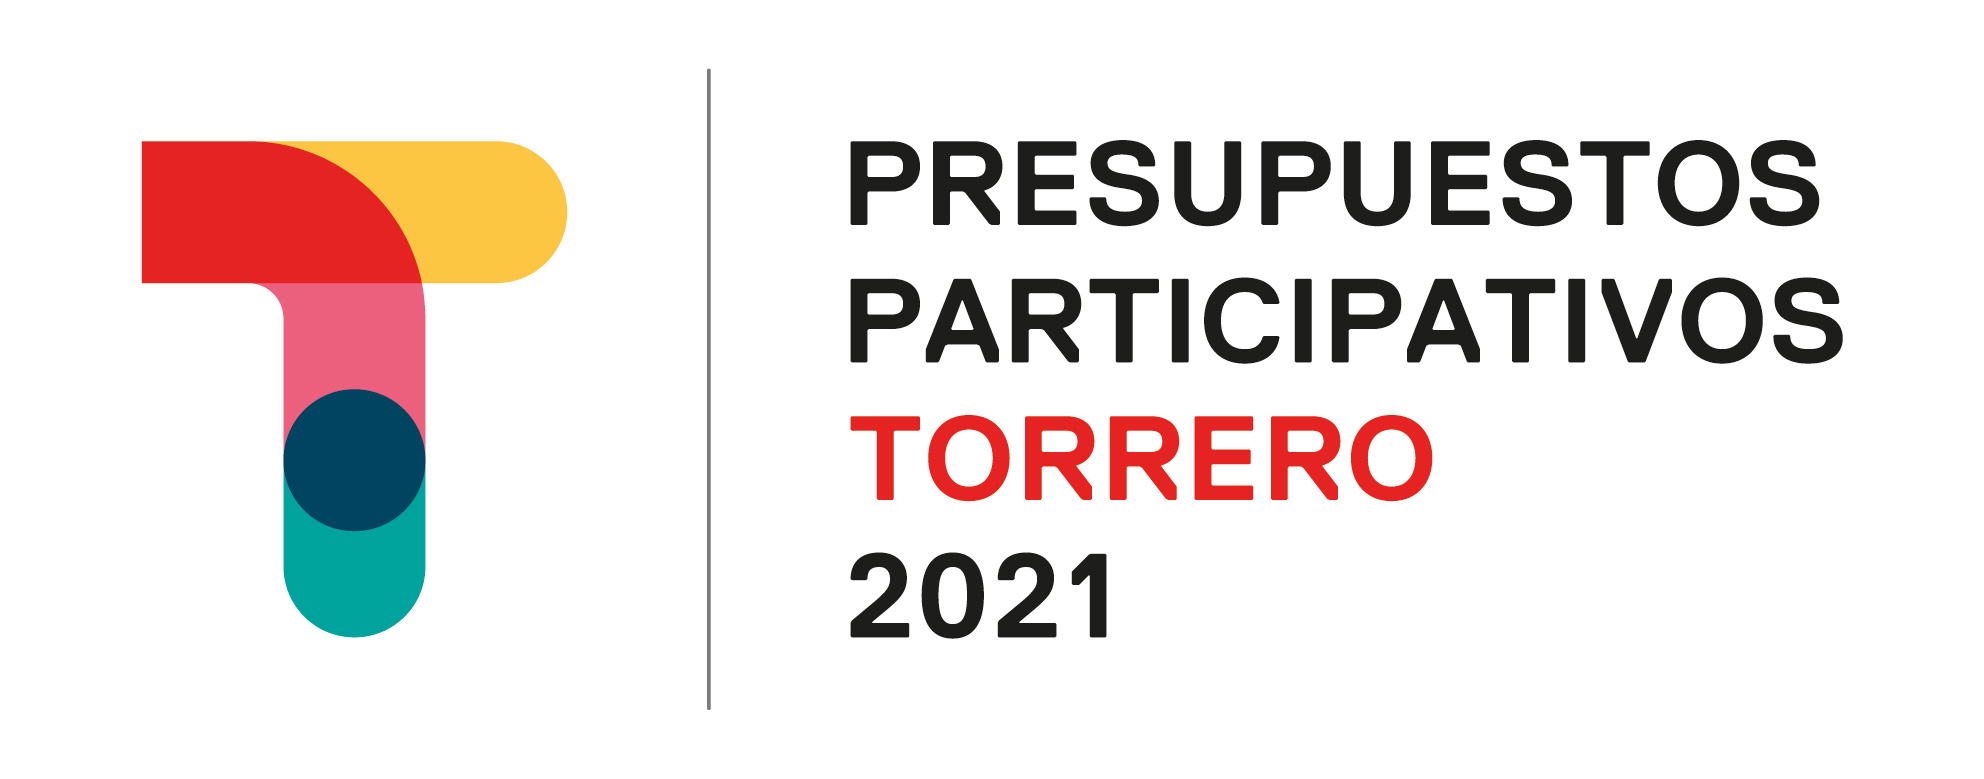 Presupuestos Participativos Torrero 2021